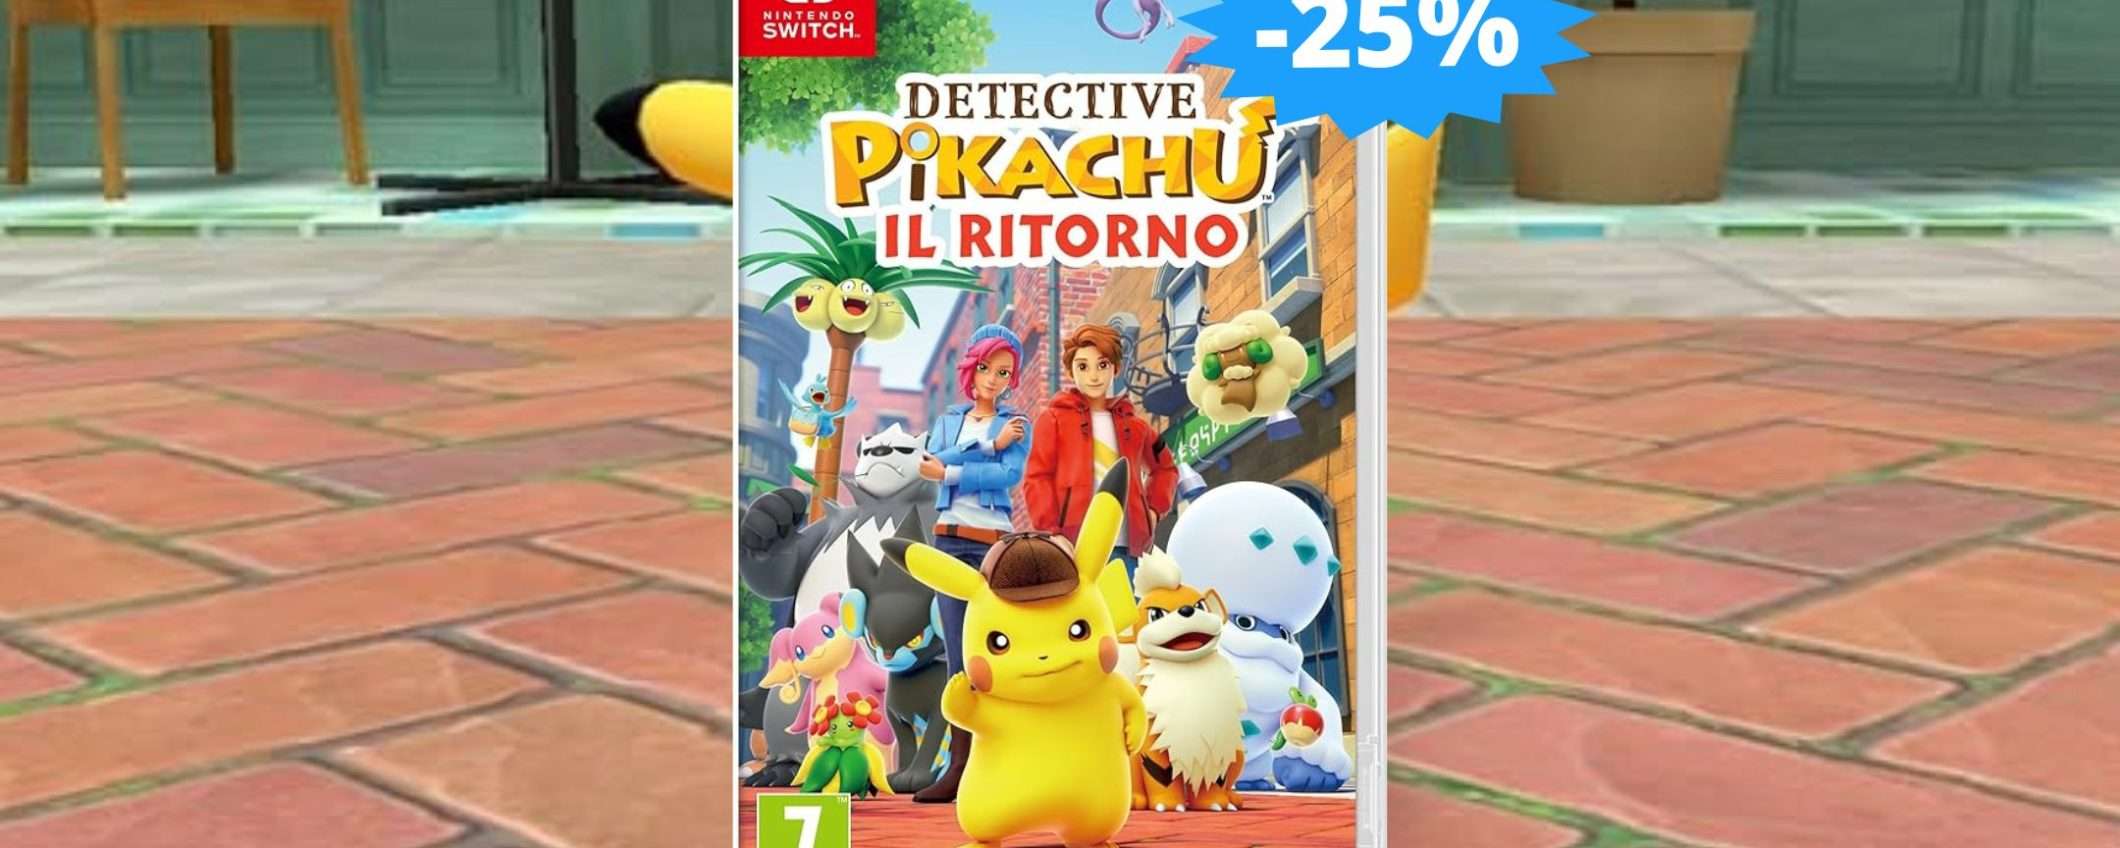 Detective Pikachu Il Ritorno: un'avventura IMPEDIBILE (-25%)